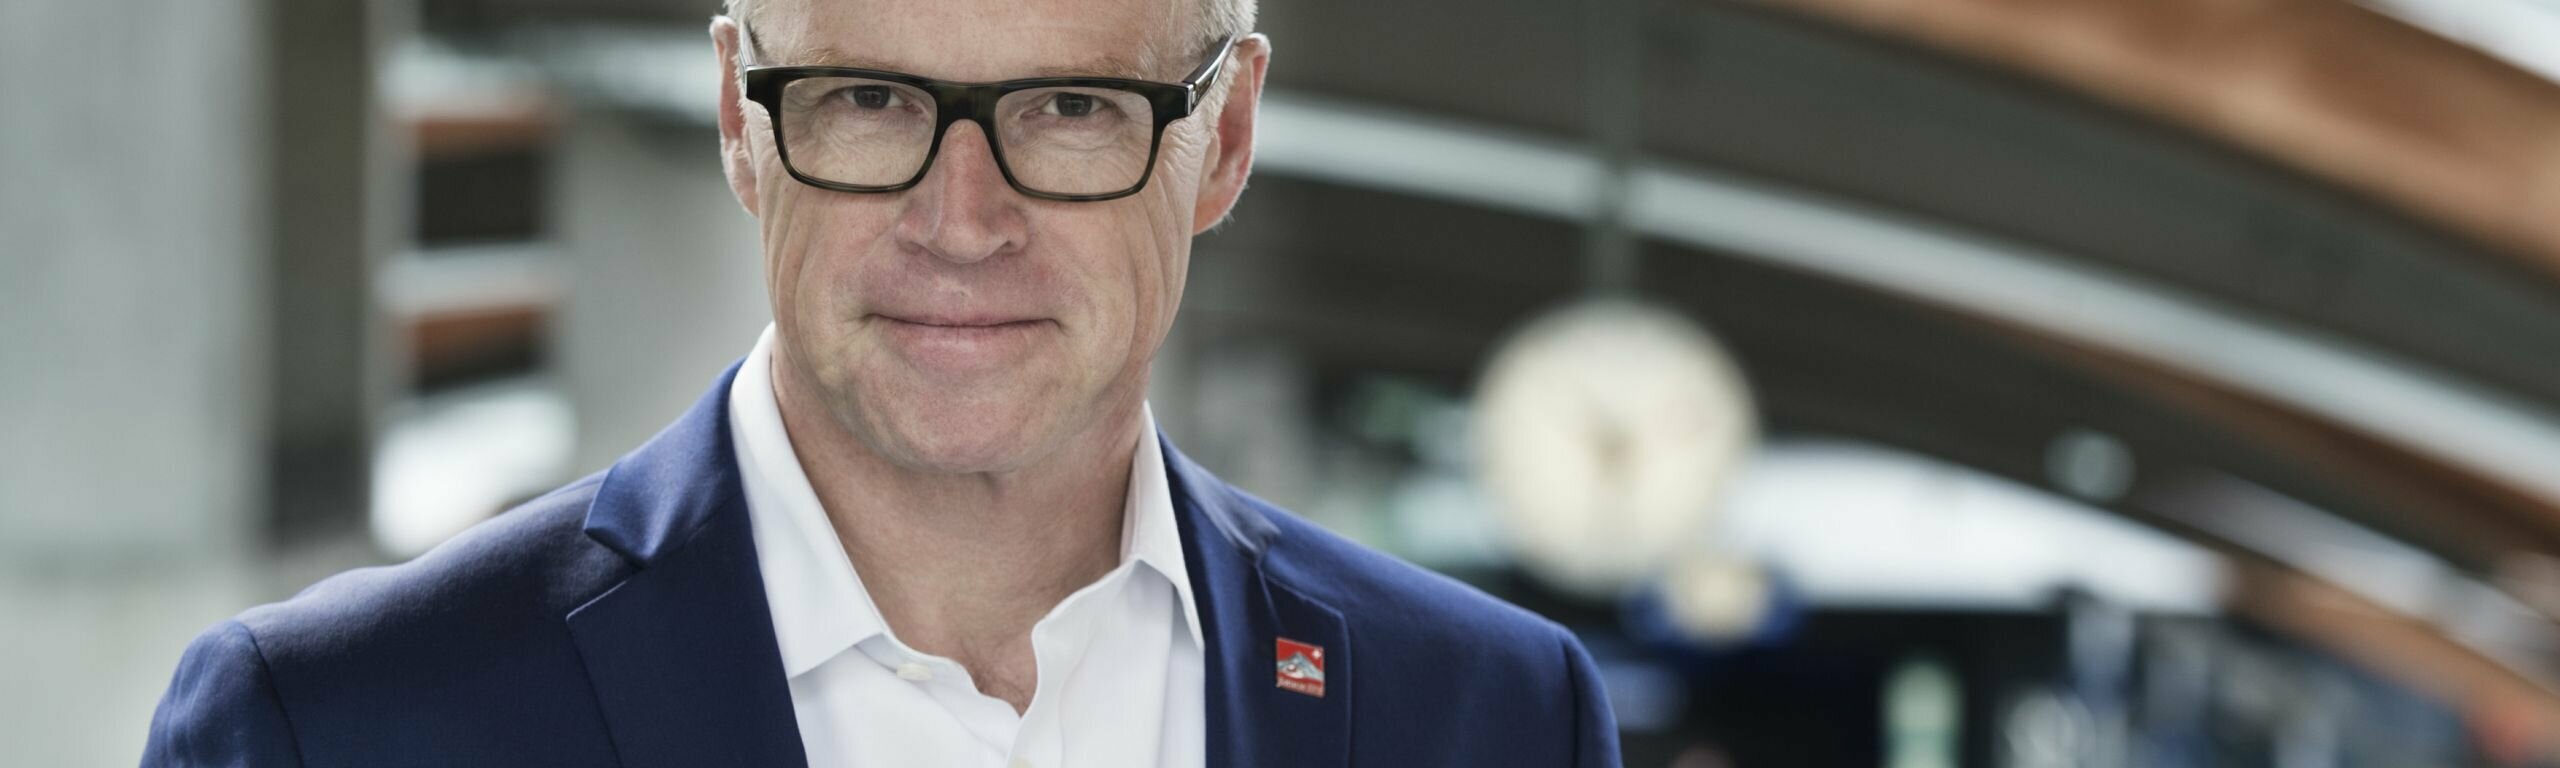 Andreas Meyer tritt als CEO der SBB zurück